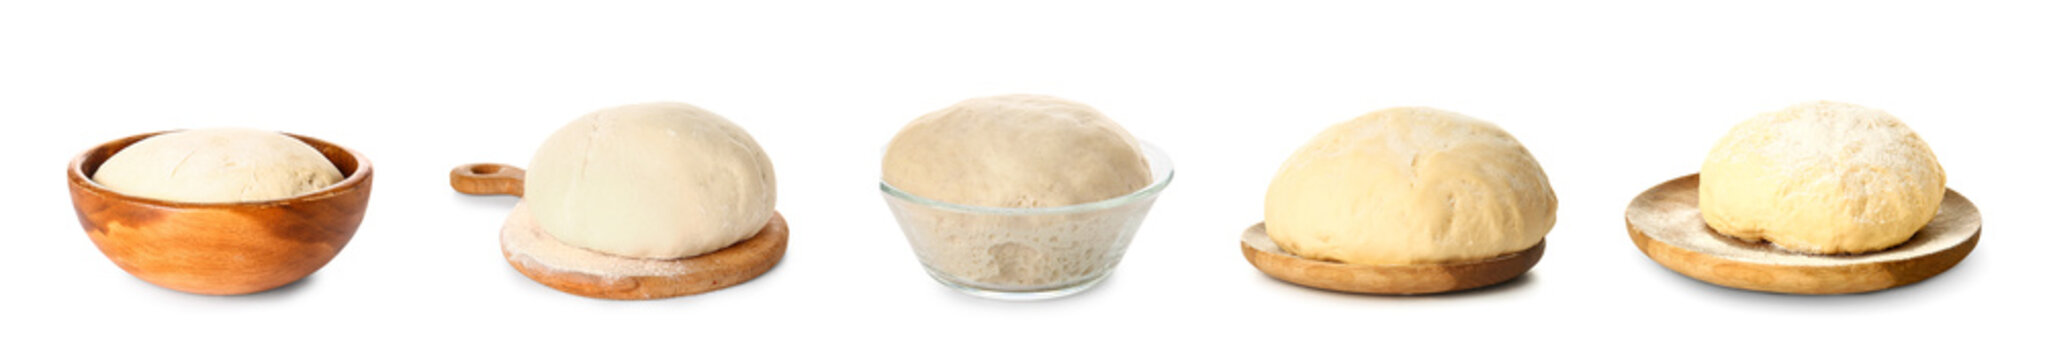 Set of fresh yeast dough isolated on white